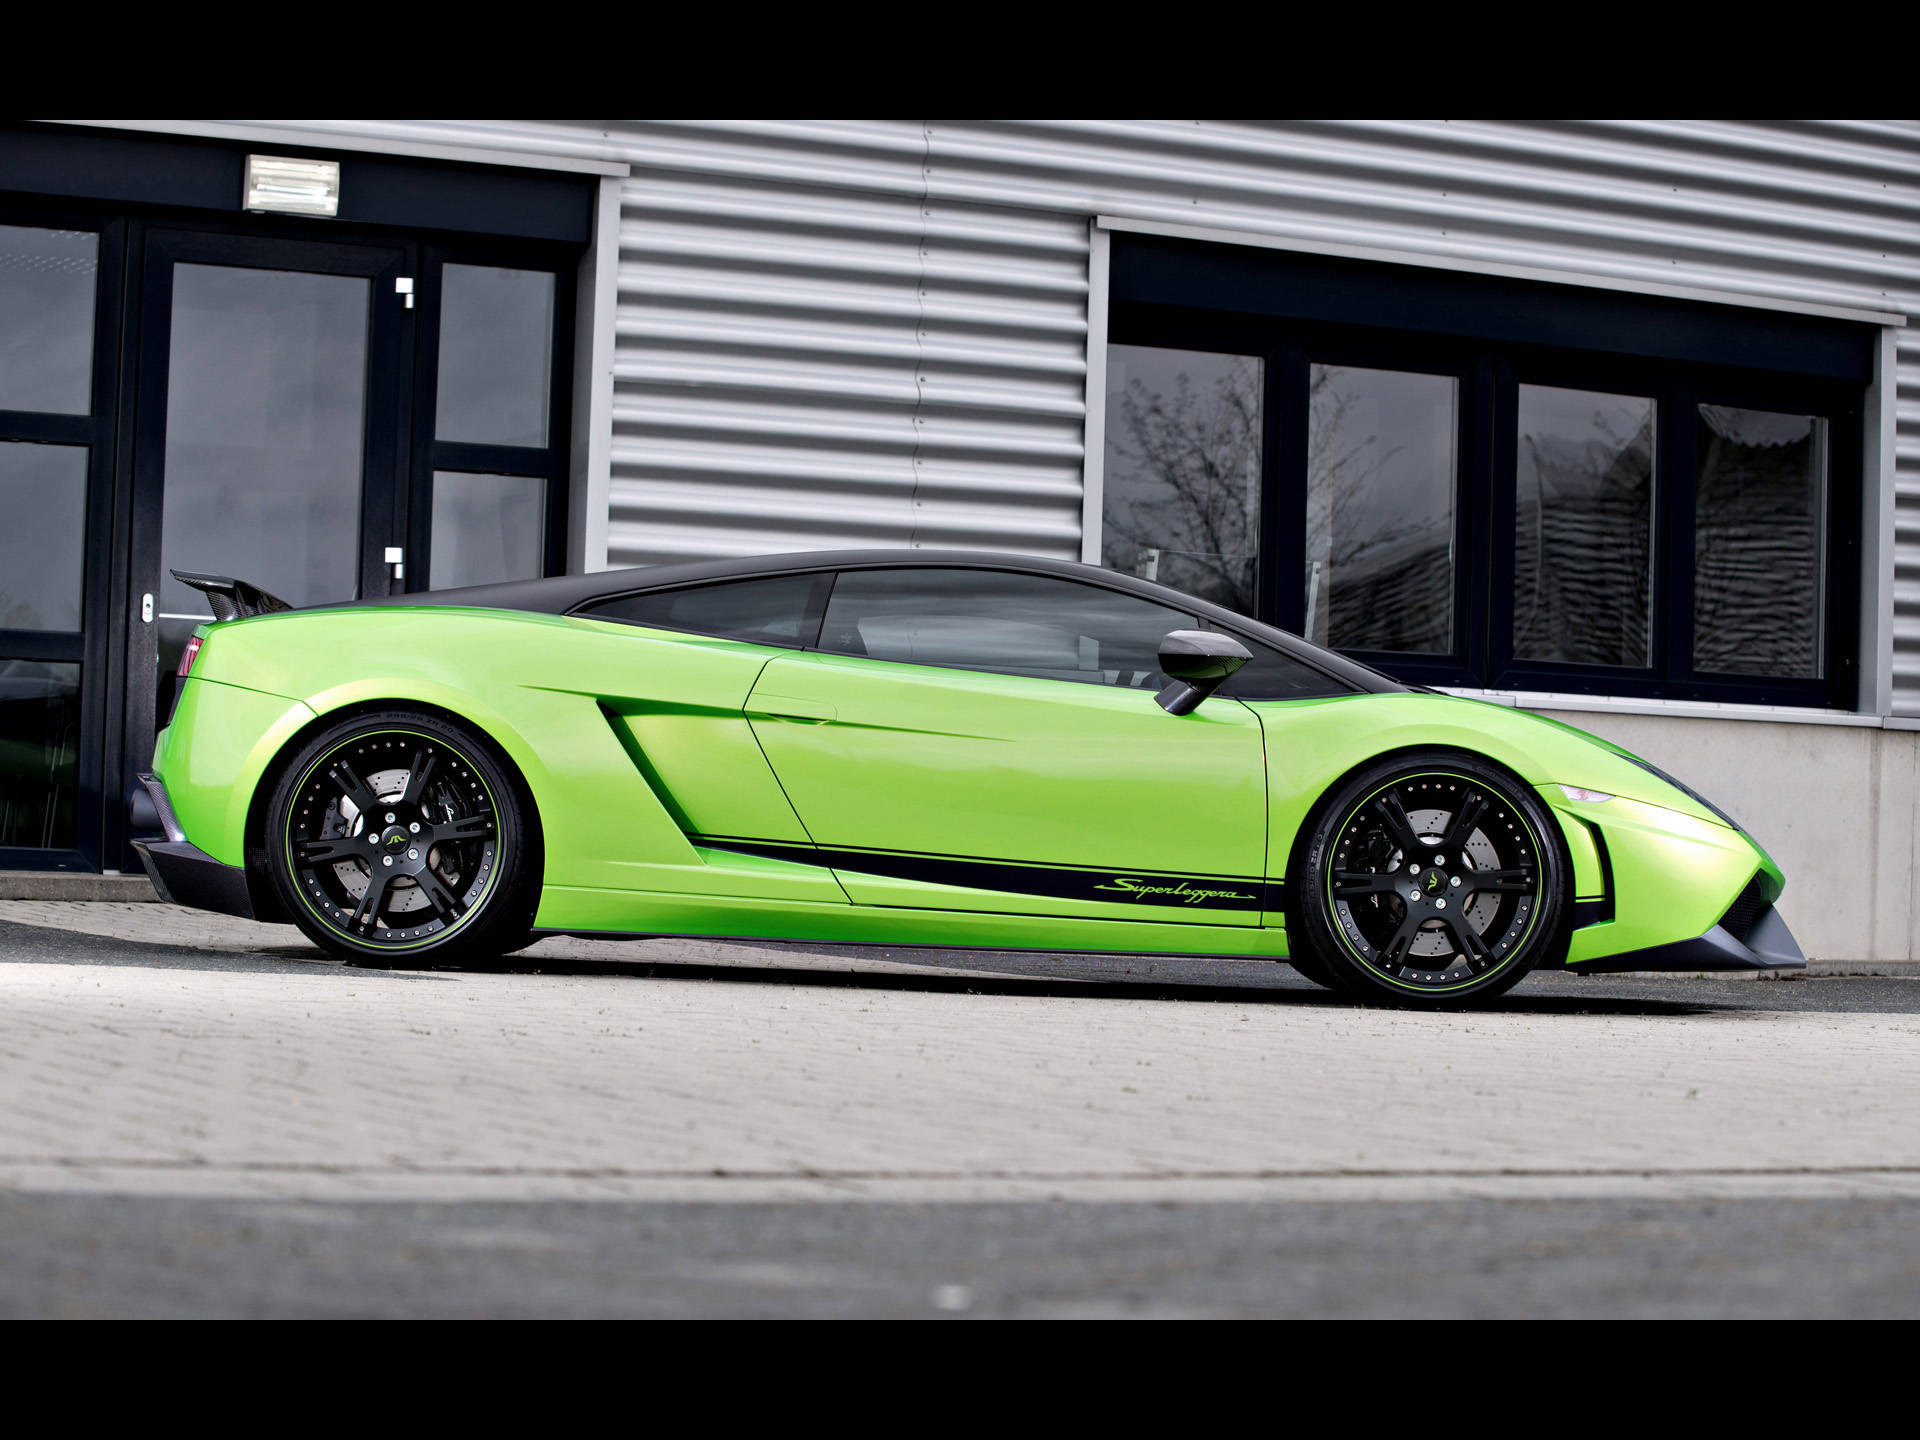 4k Lamborghini Gallardo In Stylish Green